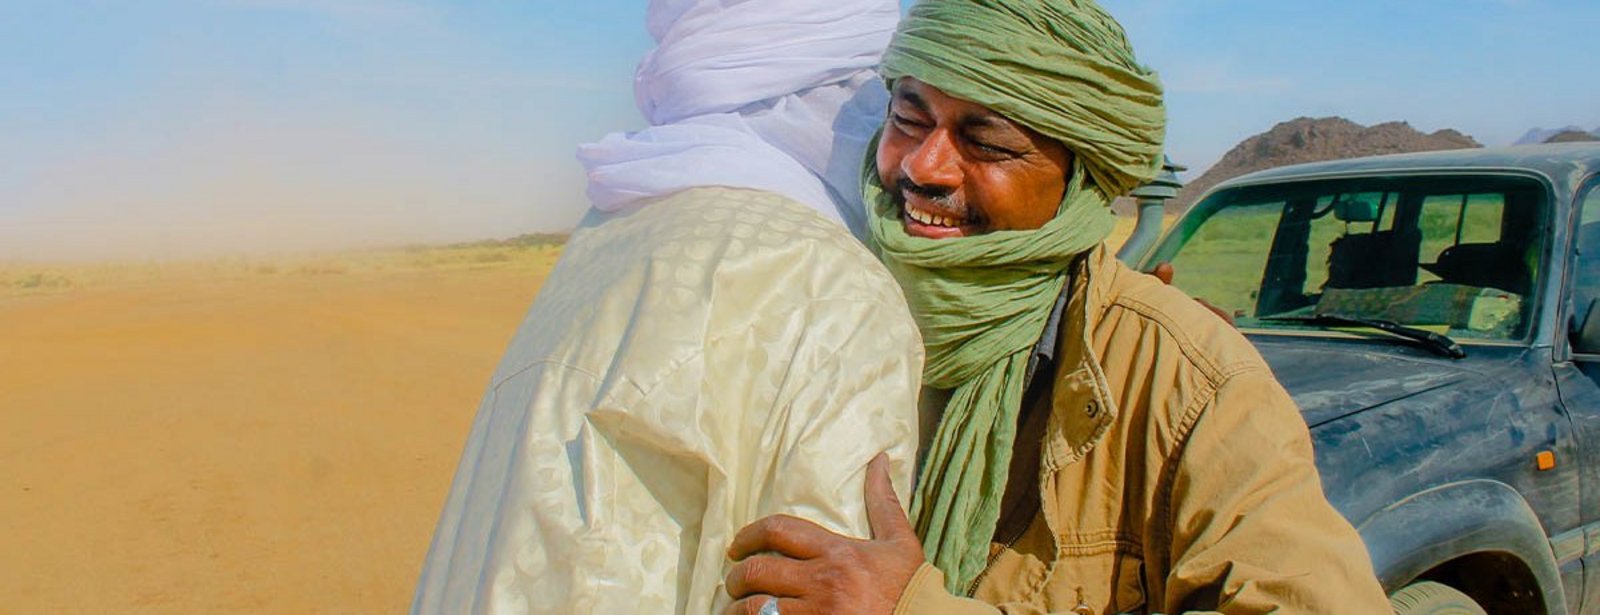 Frieden fördern in Niger